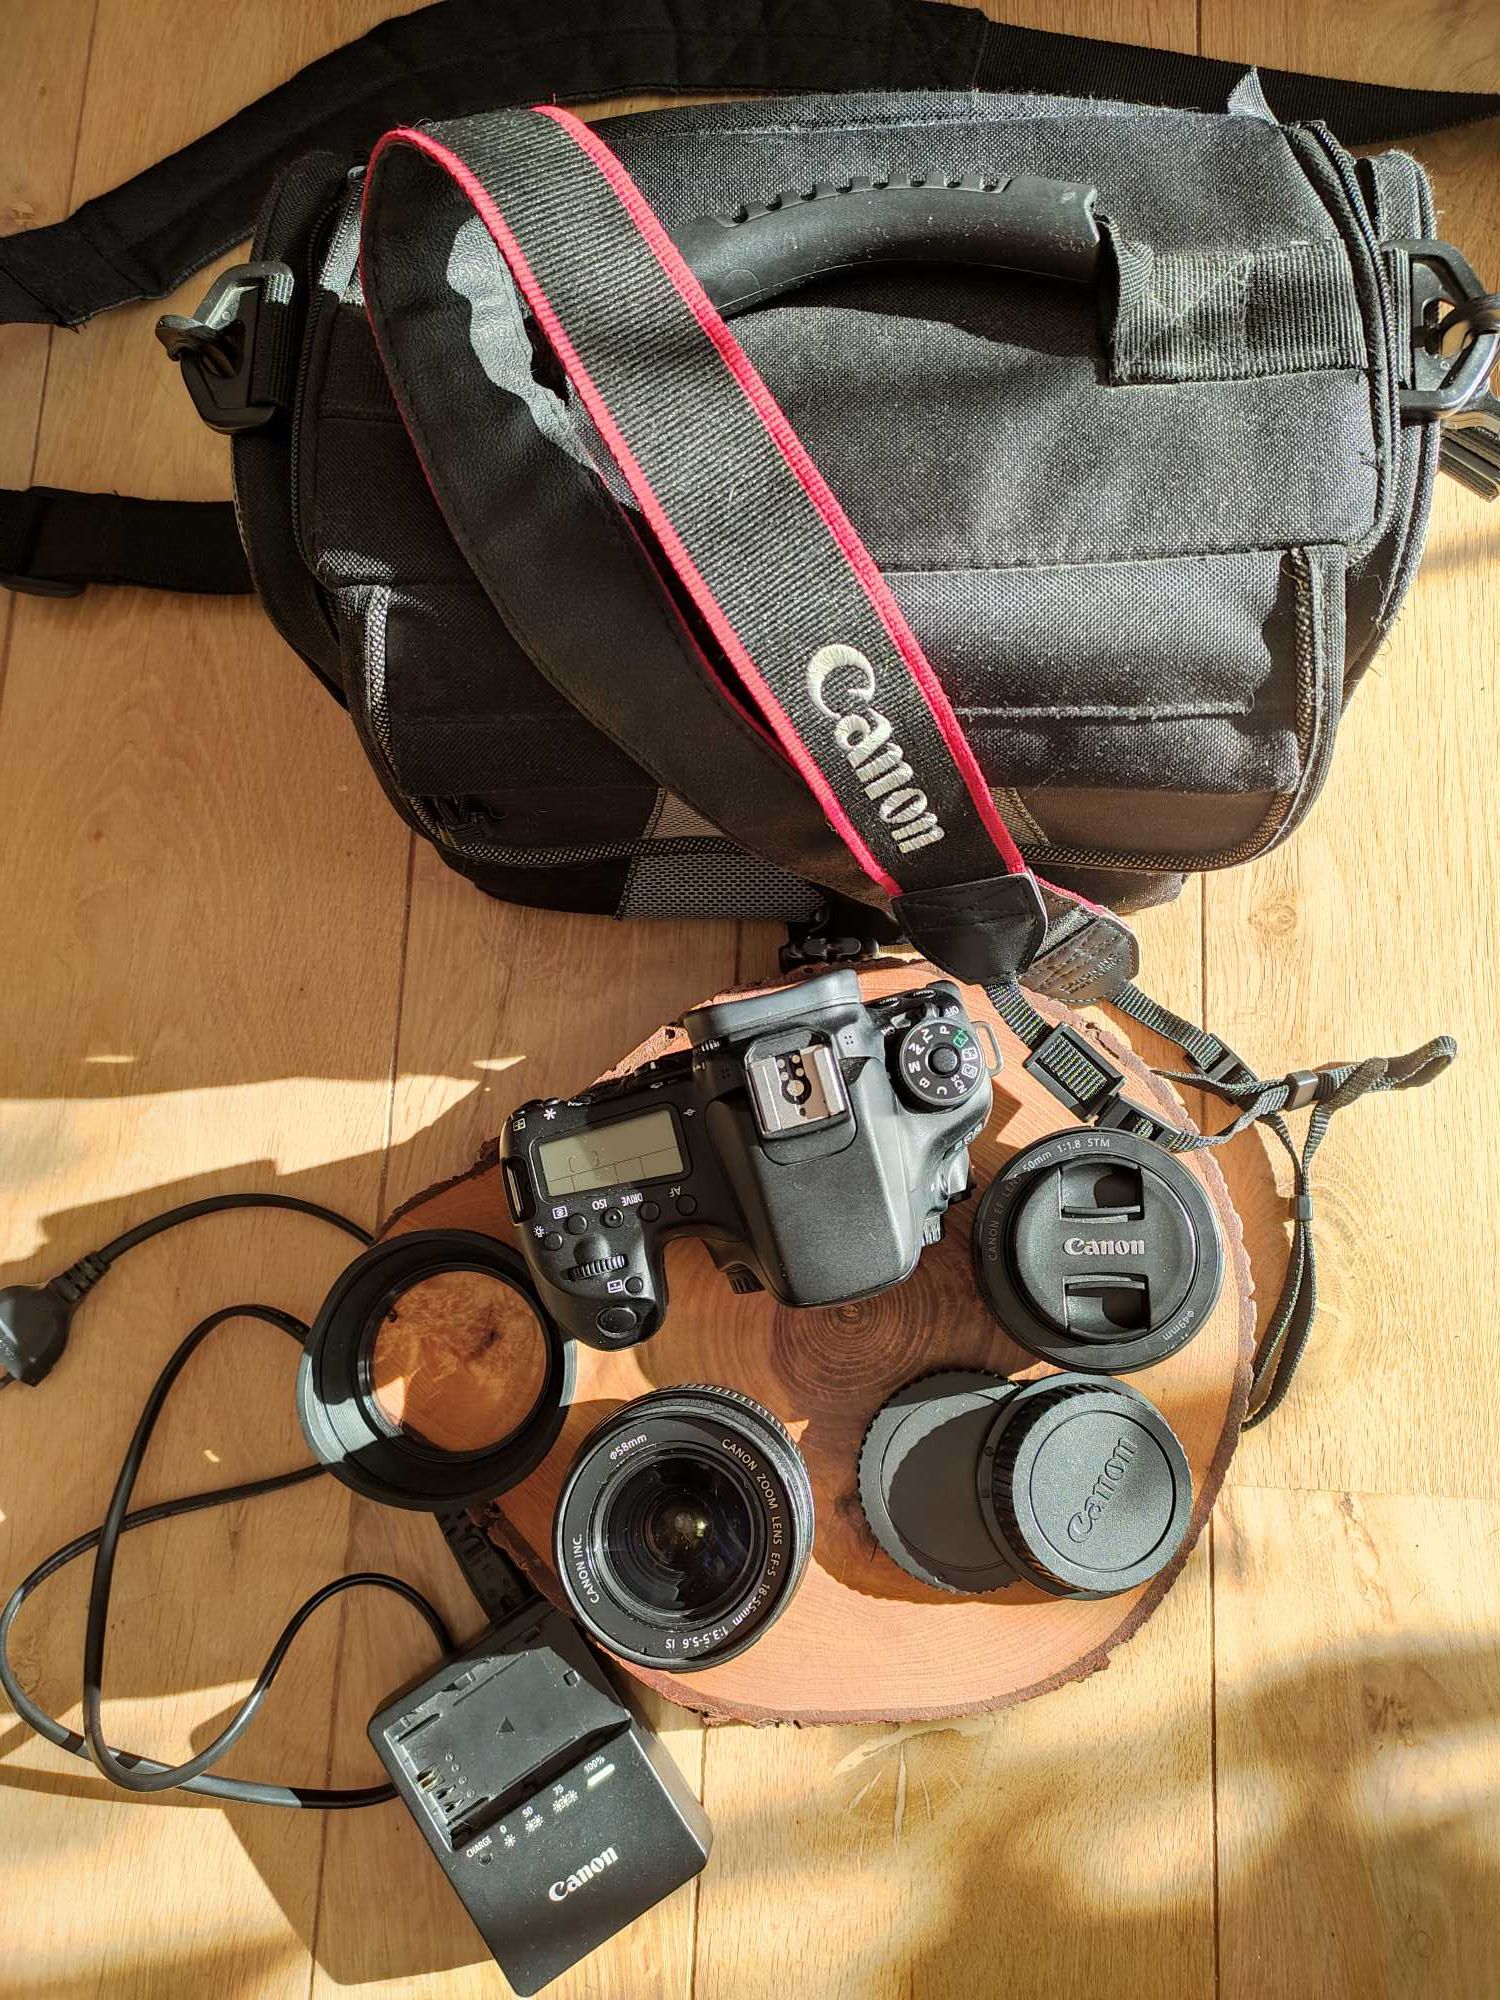 Canon 70D+50mm f/1.8 STM+18-55mm + torba, statyw, ładowarka